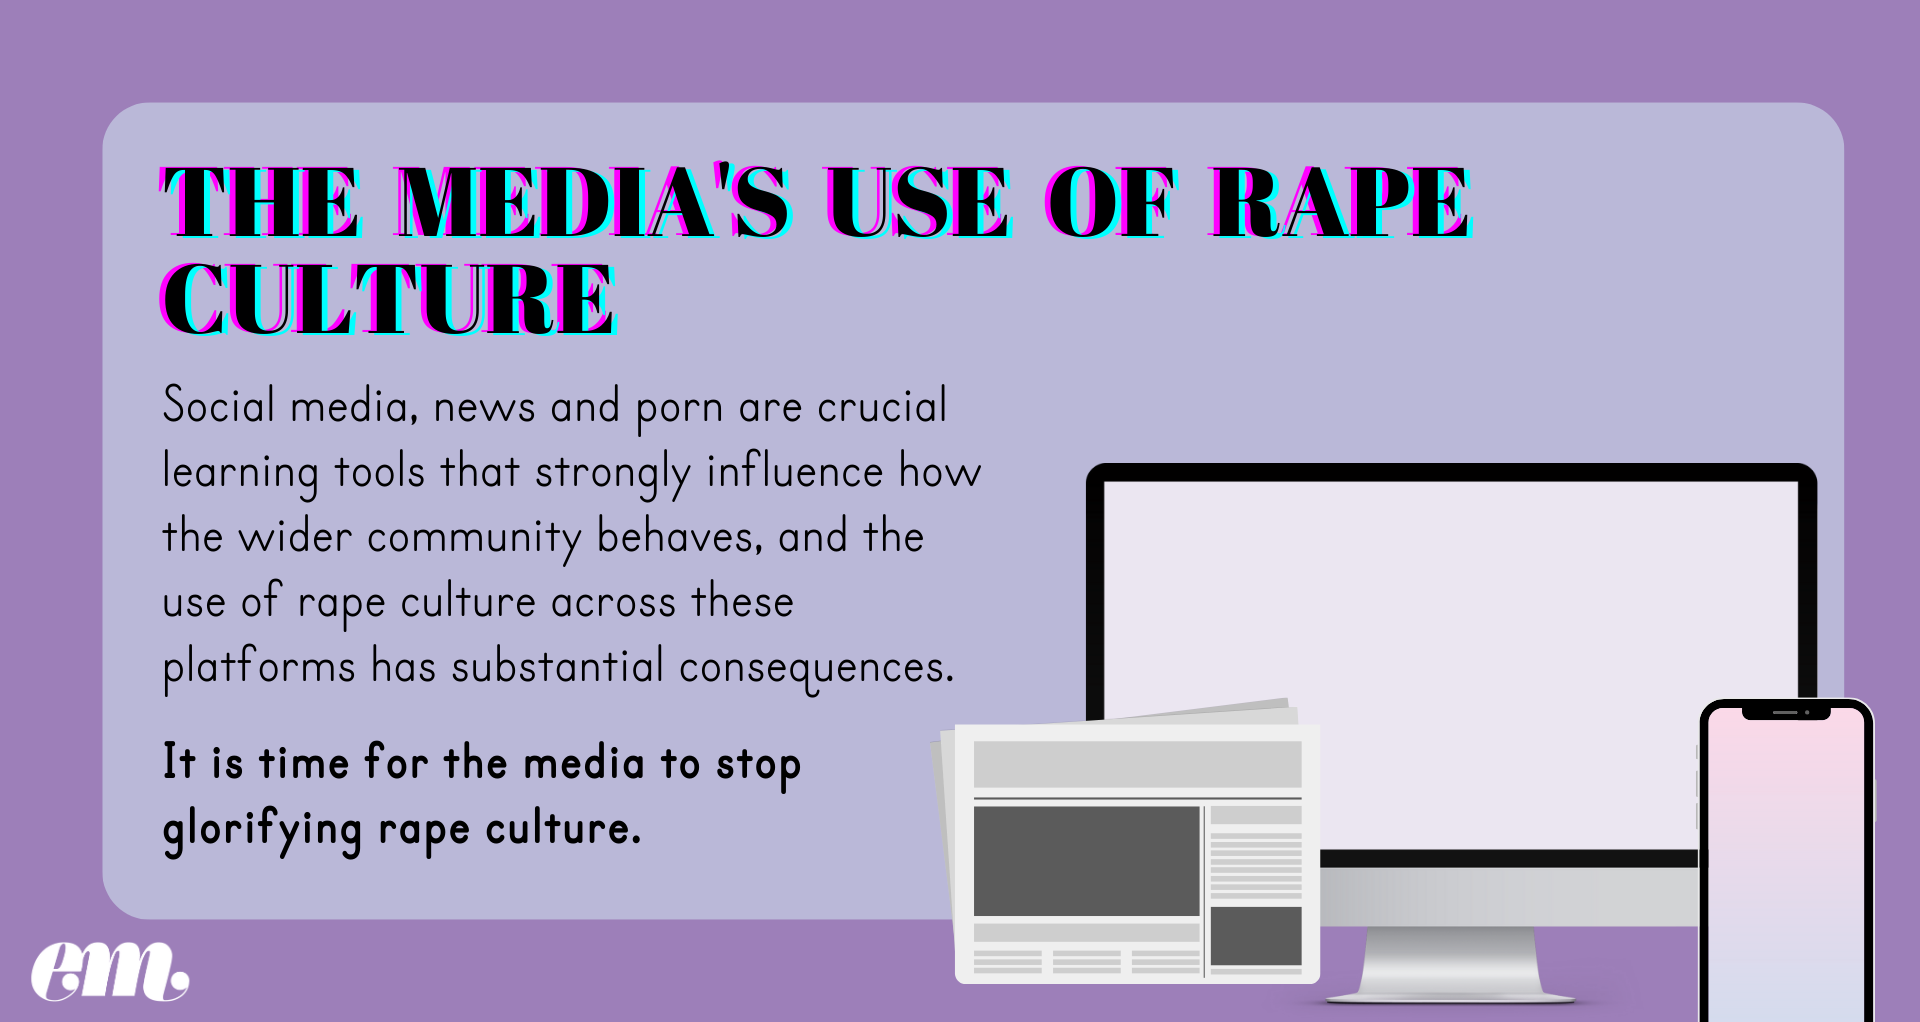 The medias use of rape culture